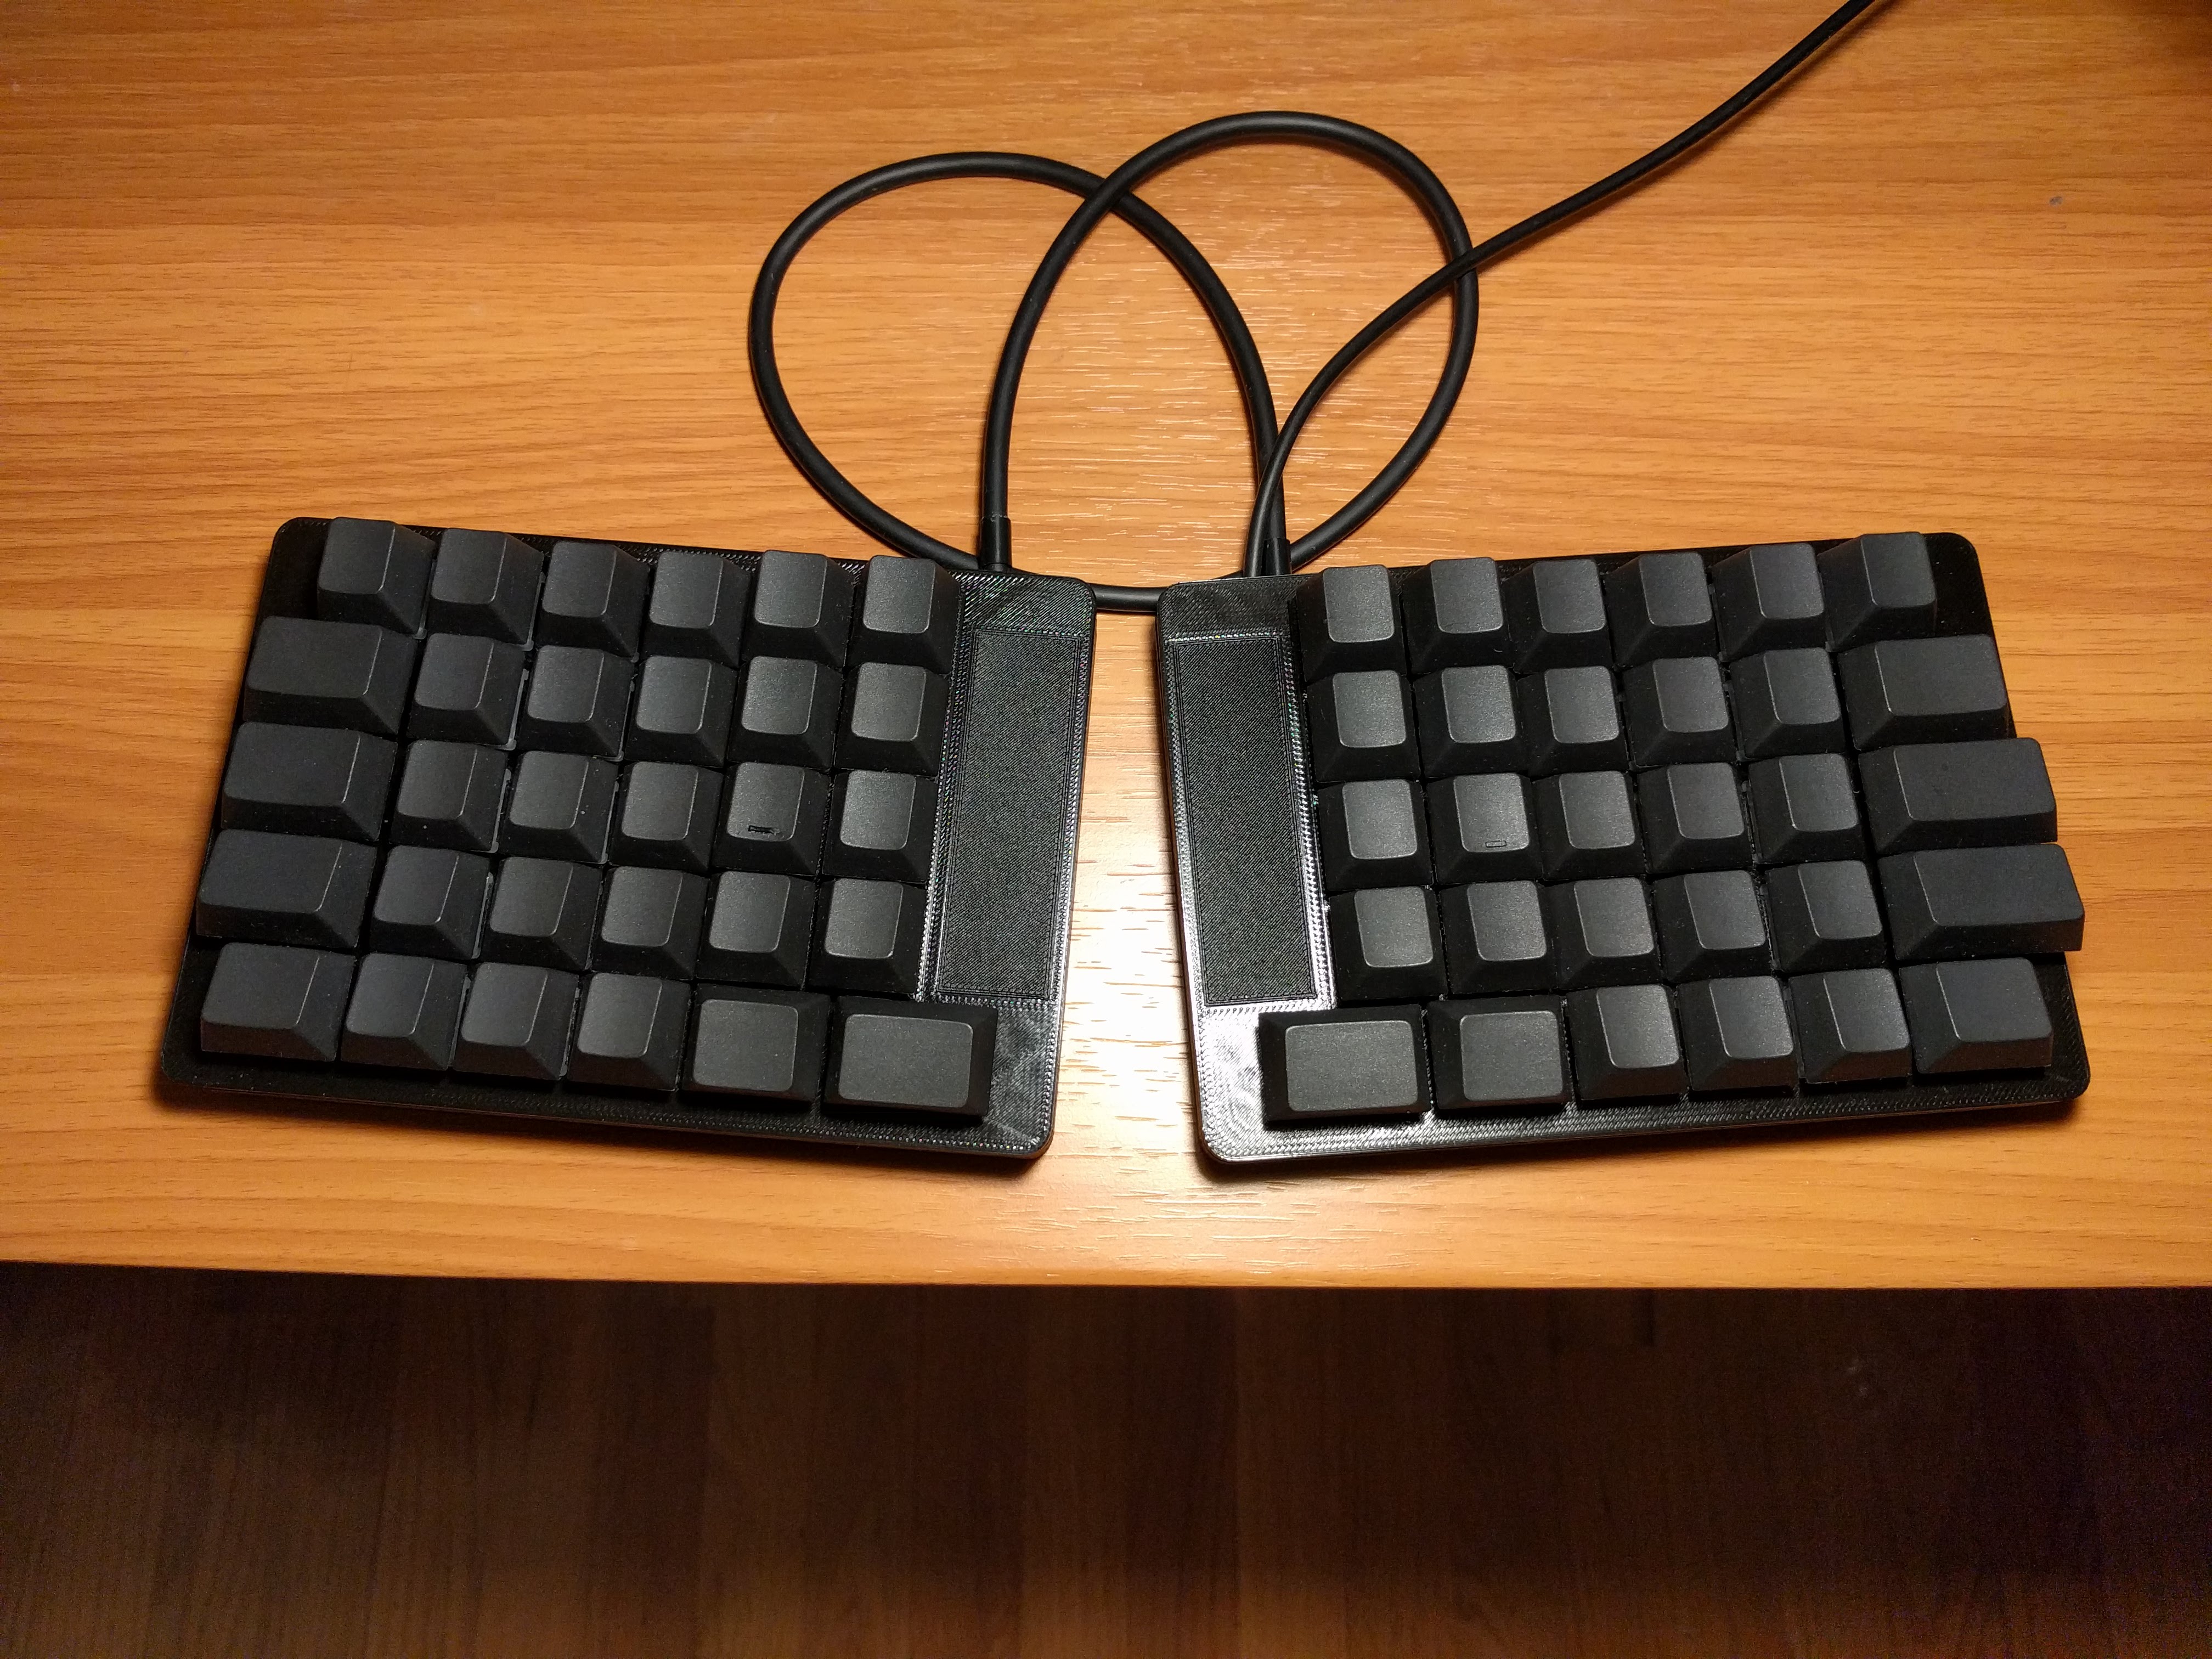 Darknight: a 60% split keyboard